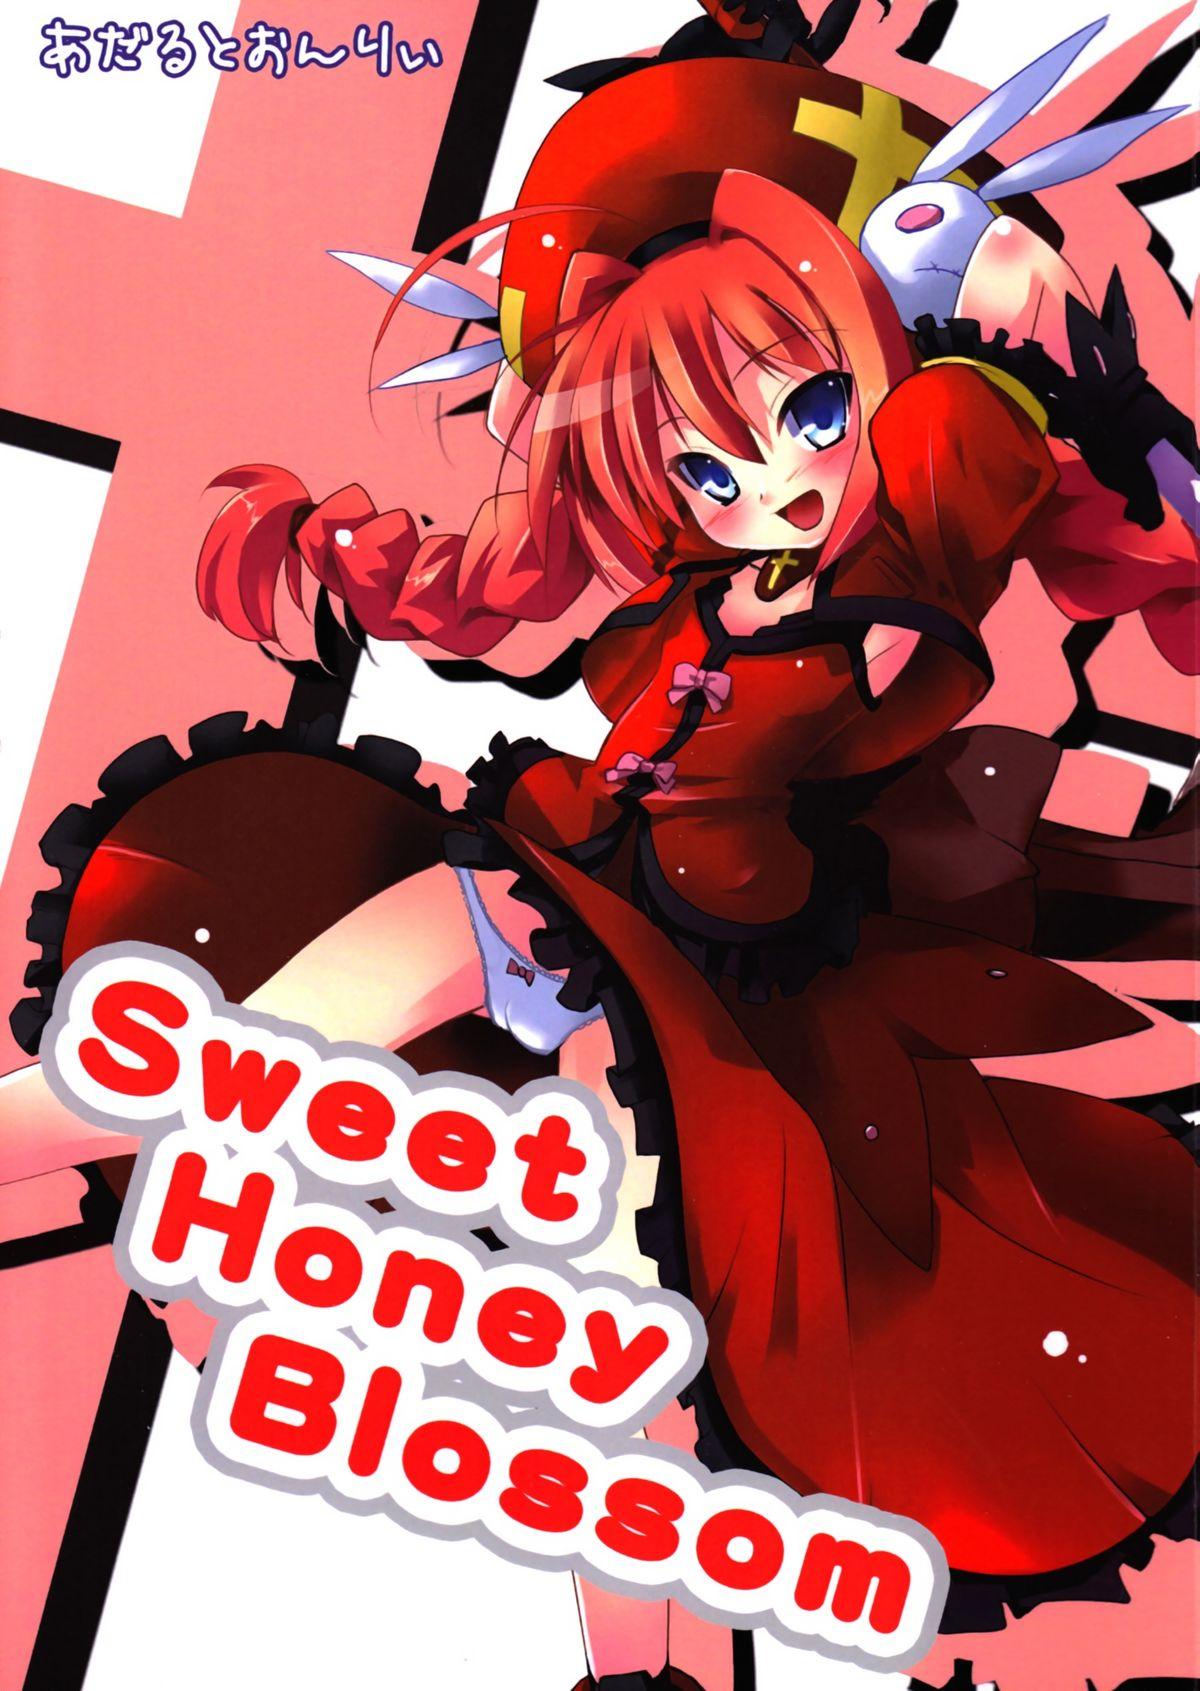 Sweet Honey Blossom 0